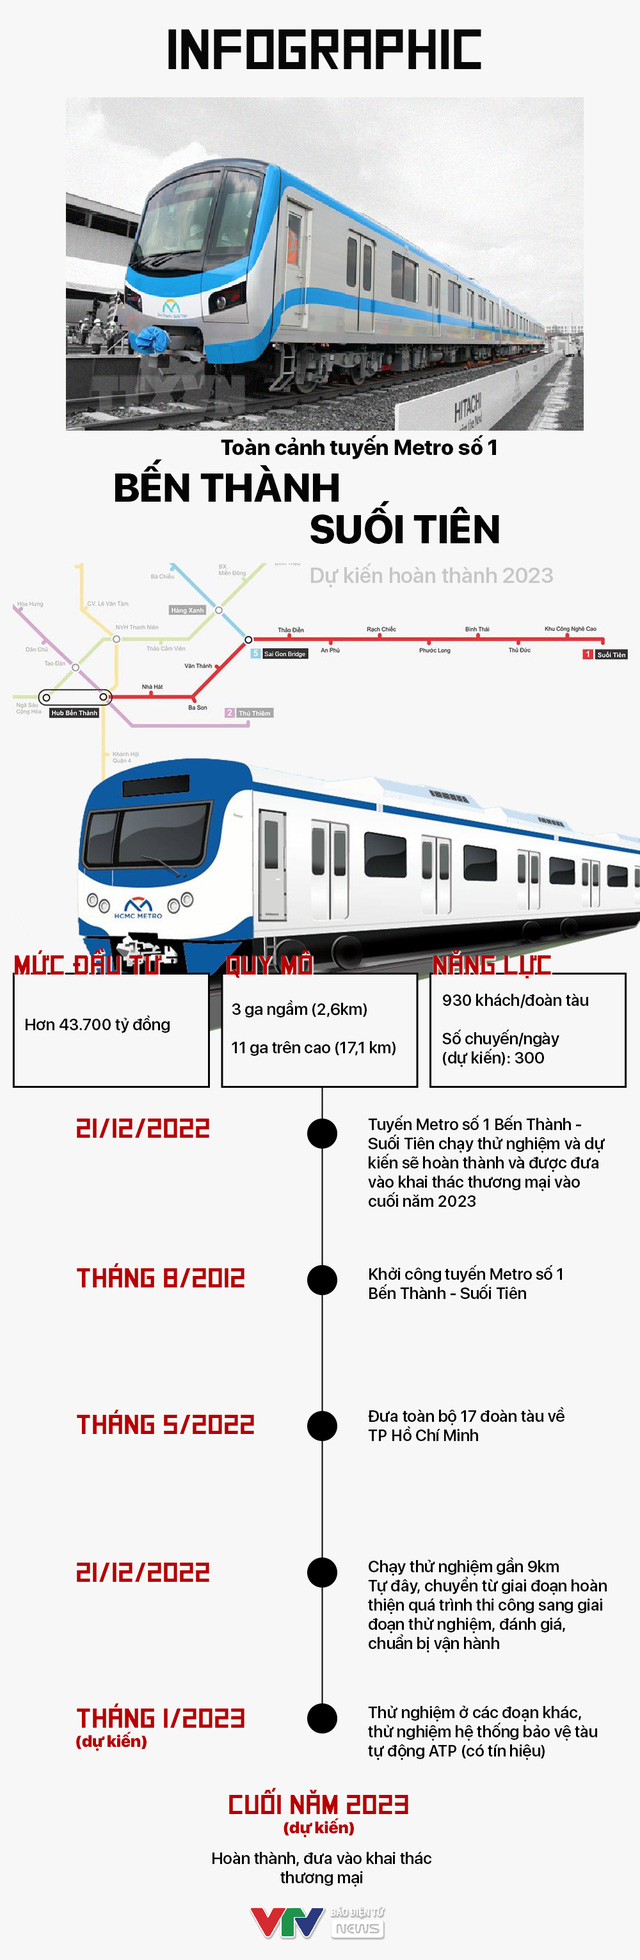 INFOGRAPHIC: Toàn cảnh tuyến Metro số 1 Bến Thành - Suối Tiên dự kiến vận hành năm 2023 - Ảnh 1.